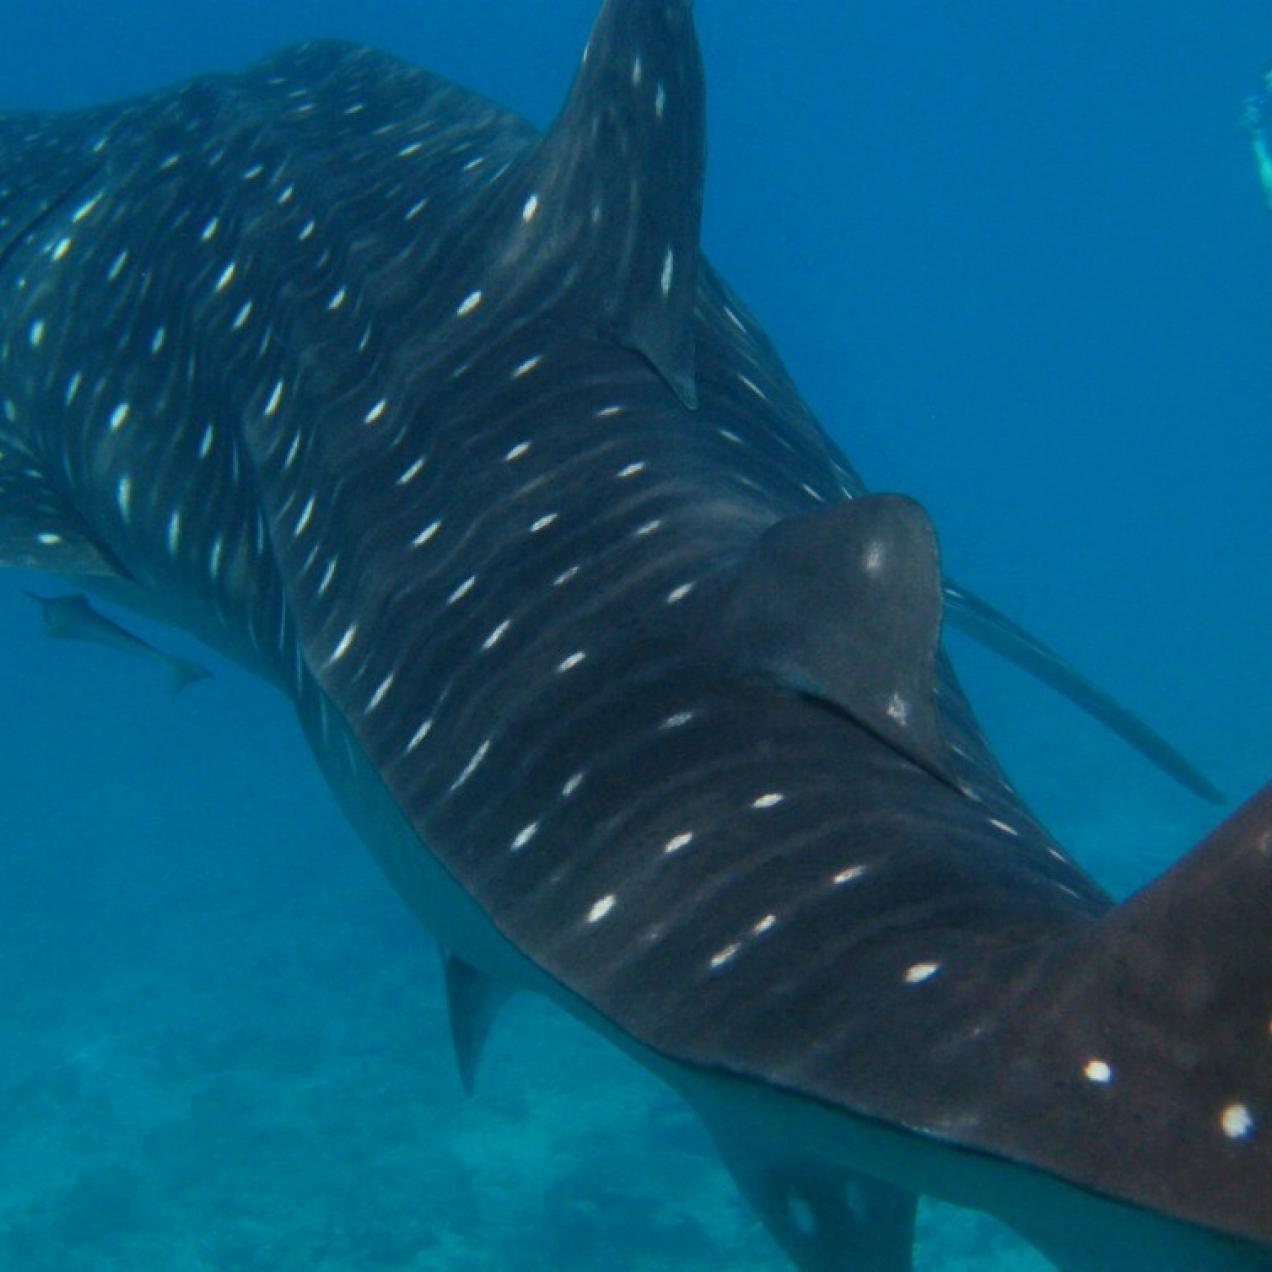 Tiburón ballena en el Caribe Mexicano, nada con ellos